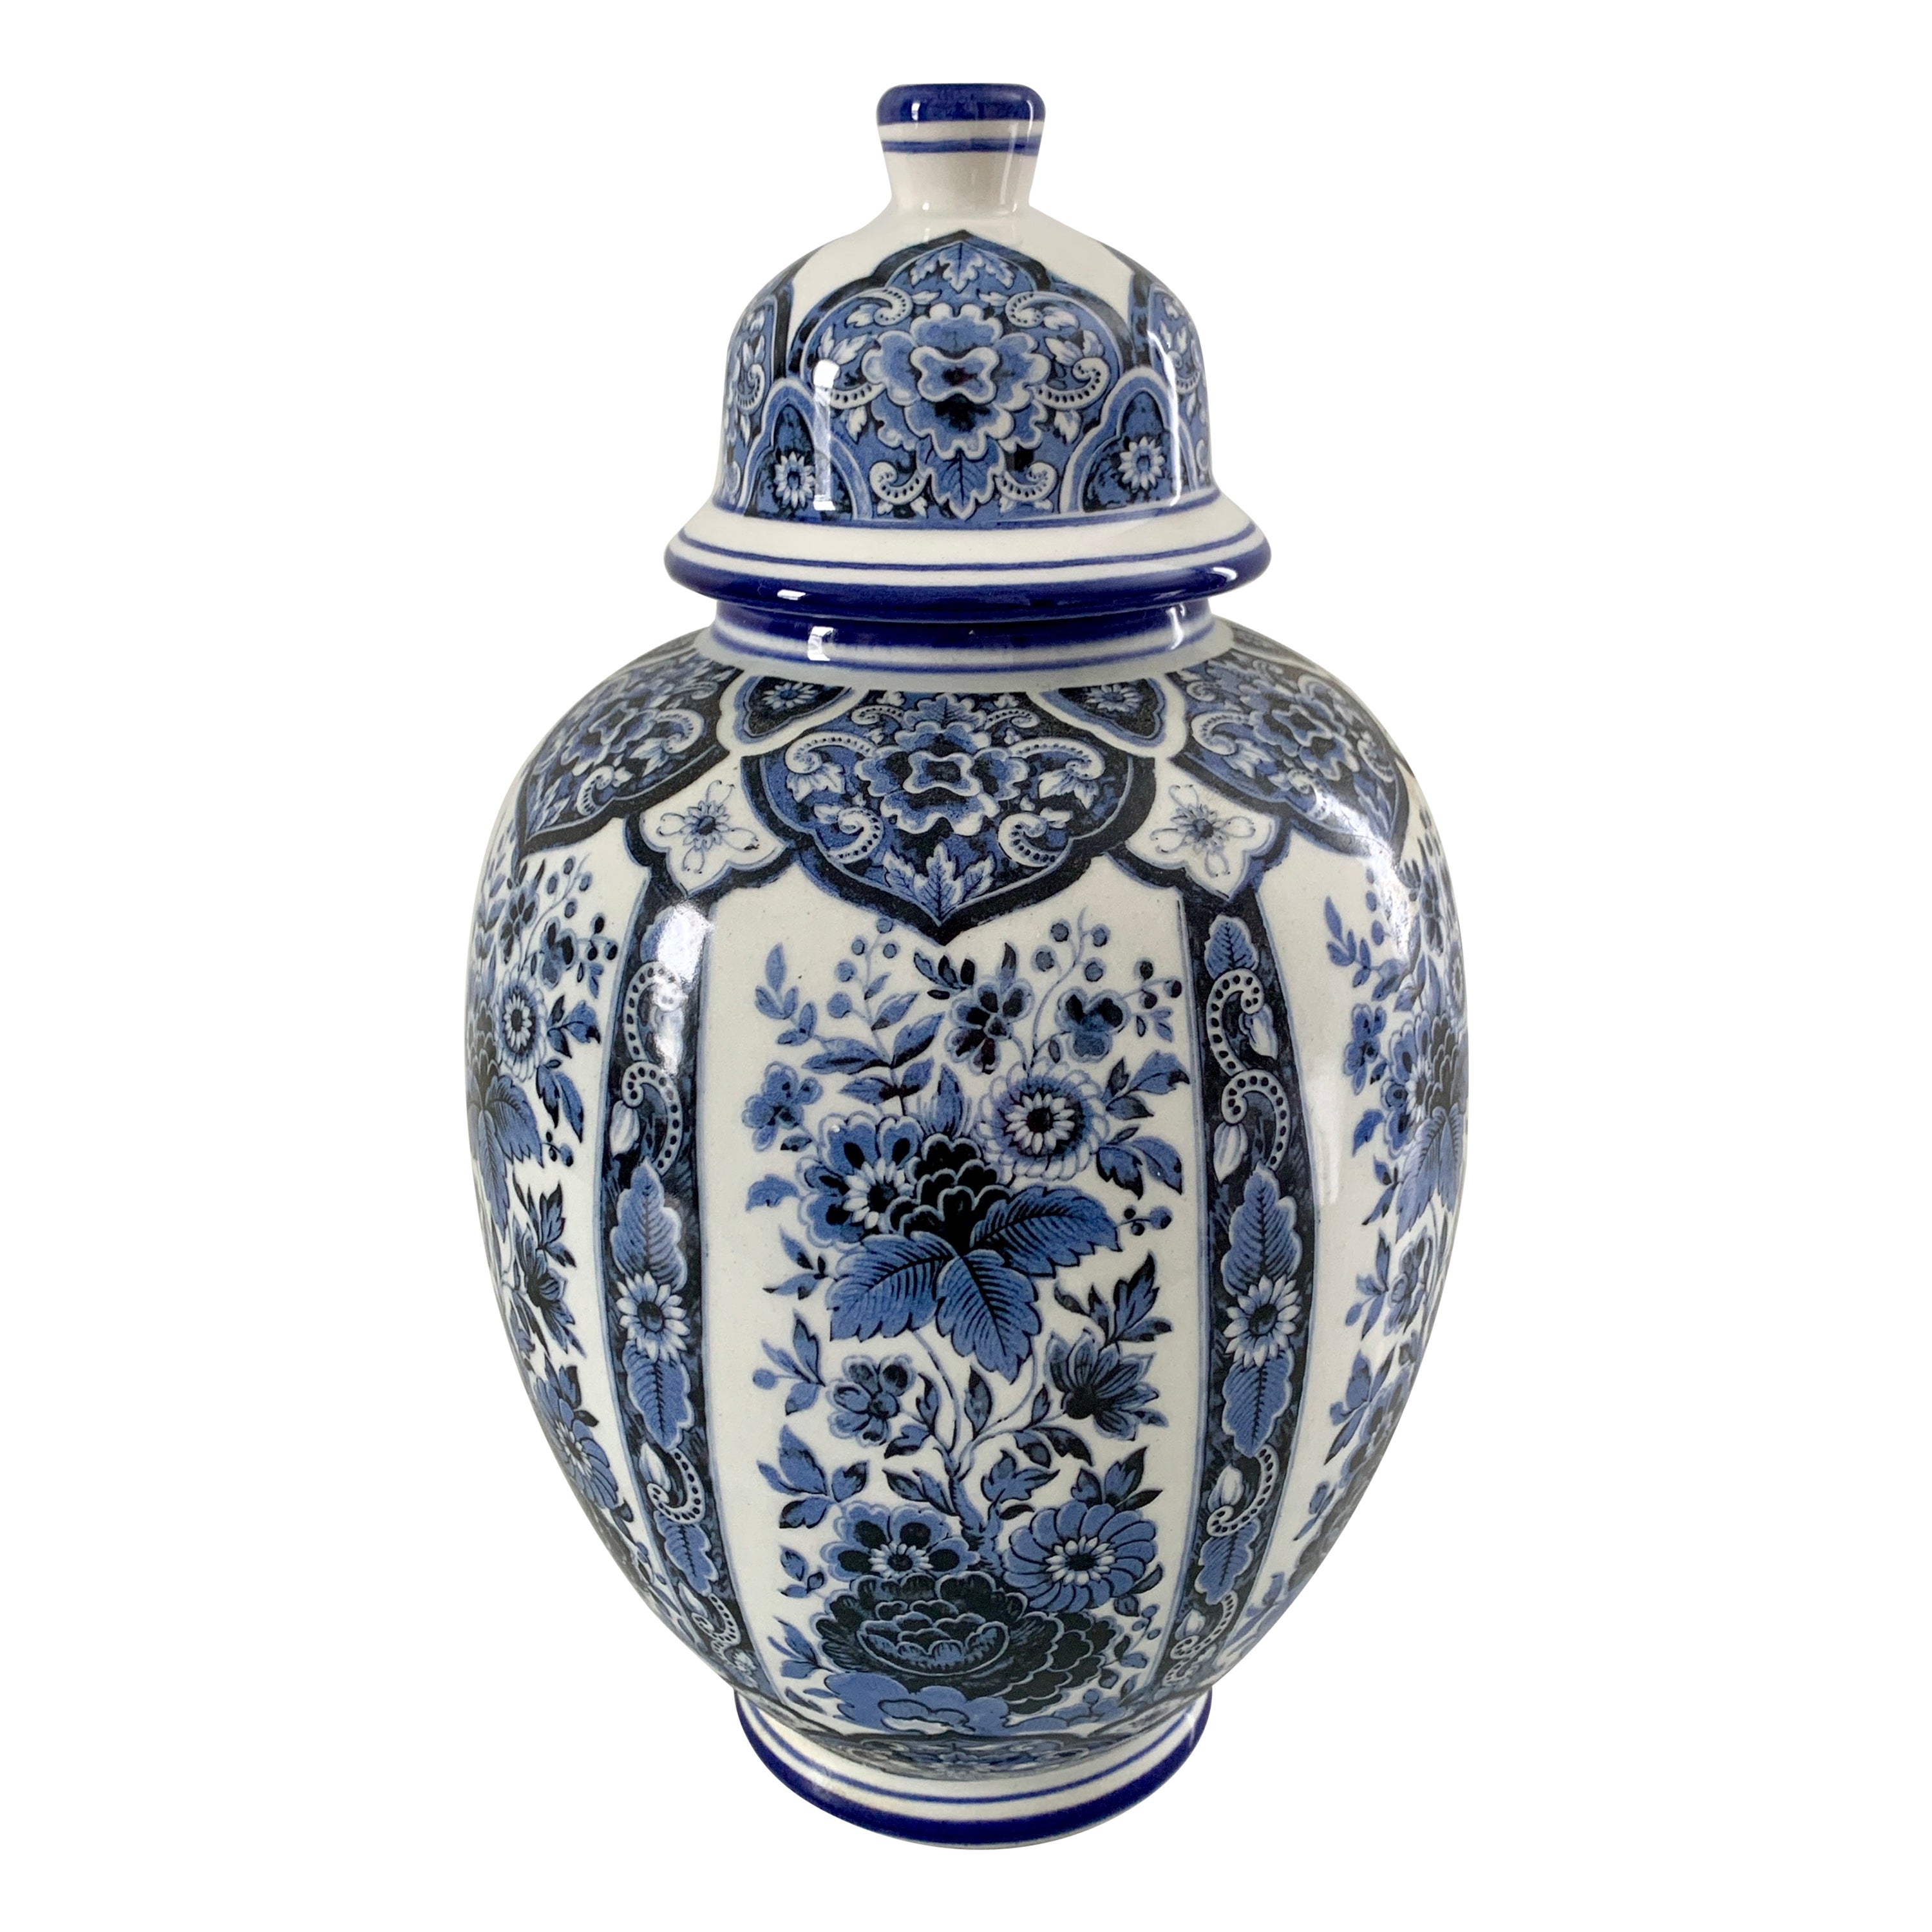 Pot à gingembre en porcelaine de Delfts bleu et blanc de style chinoiseries par Ardalt Blue Delfia